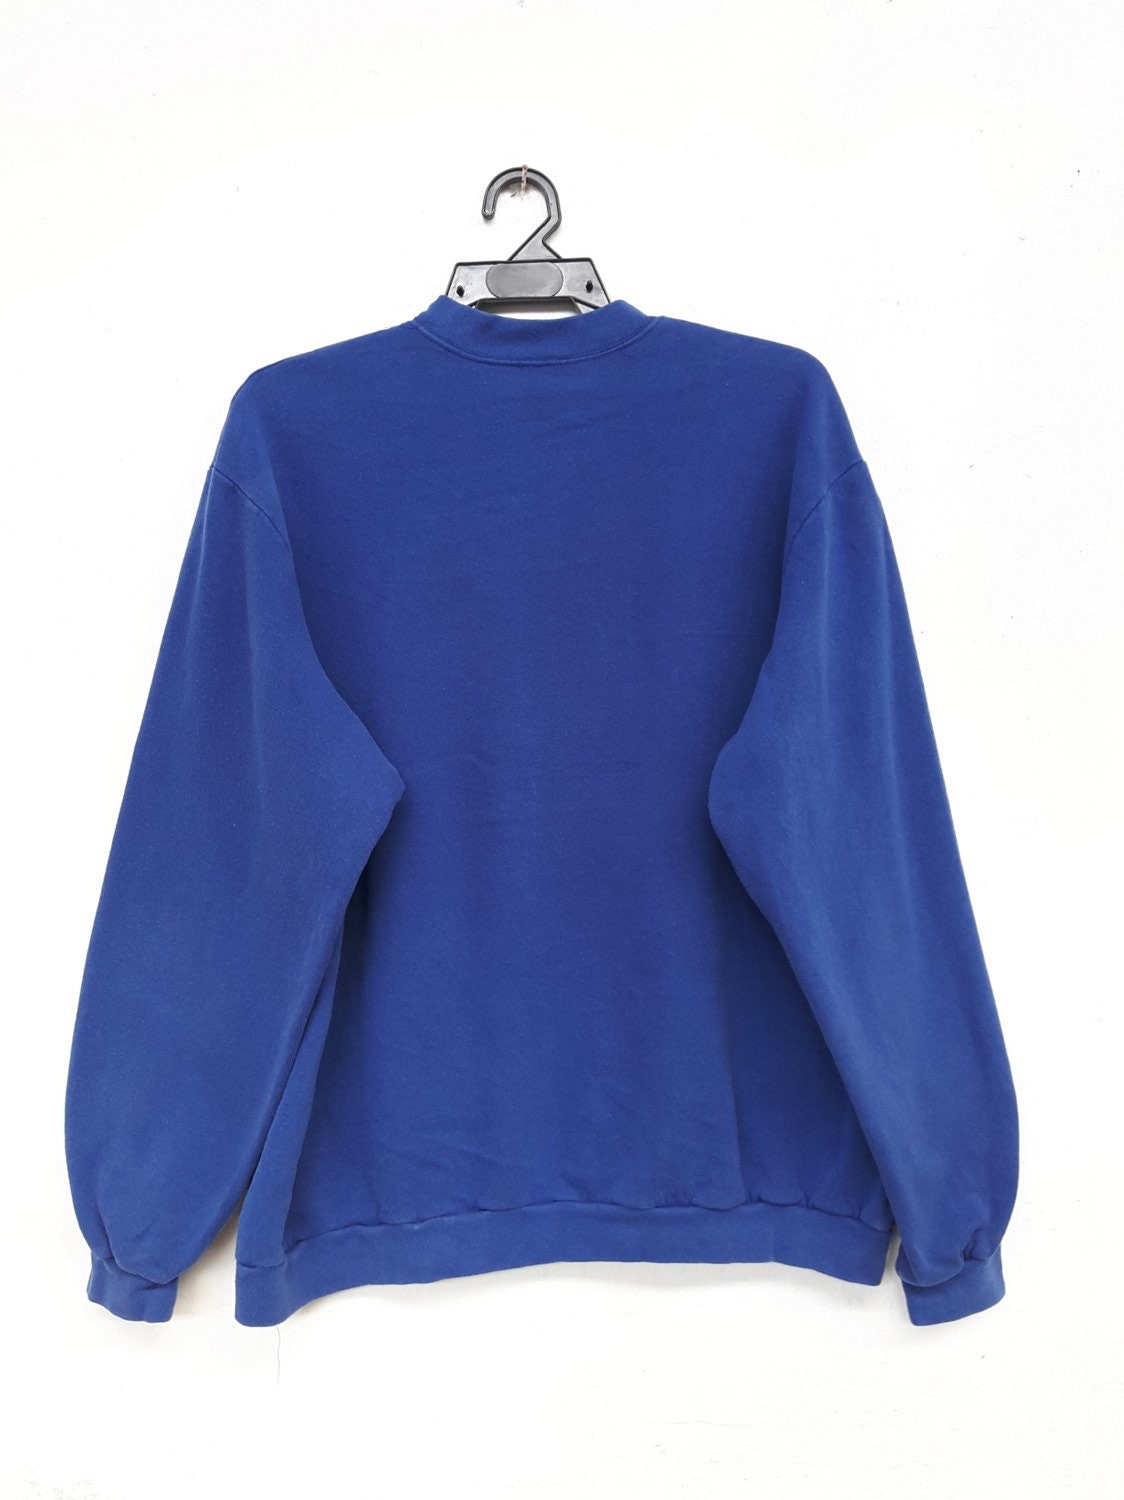 Vintage Noel Sweatshirt Long Sleeve jumper Pullover chest 26 | Etsy